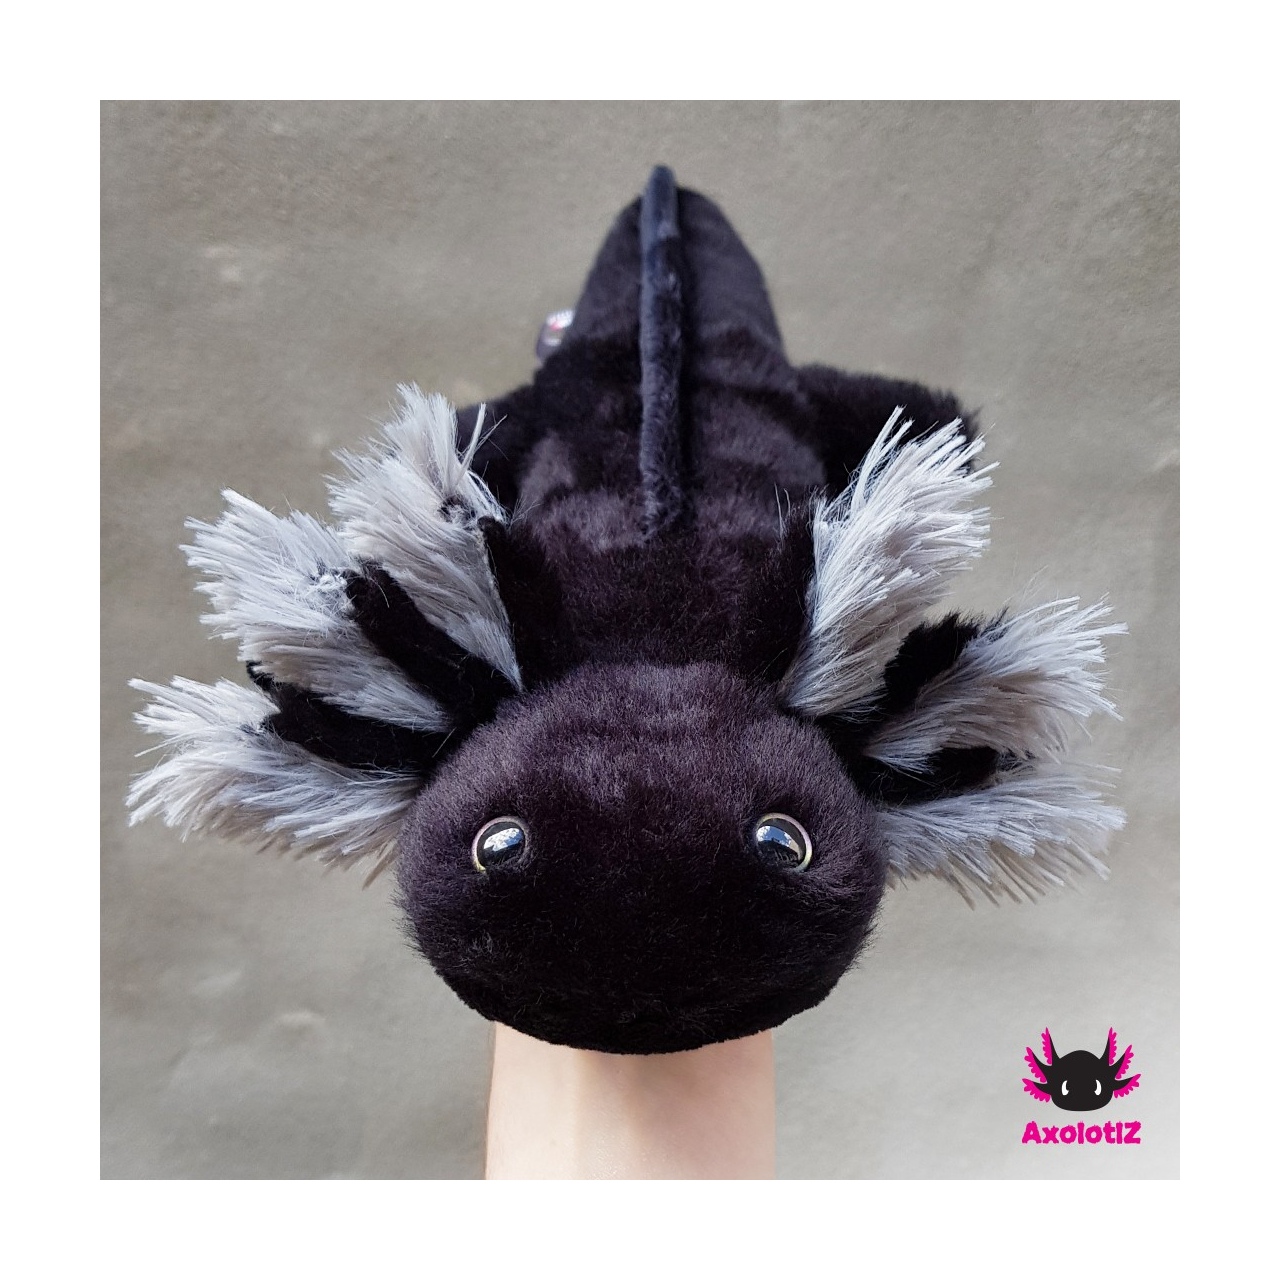 Axolotl Plush black-grey